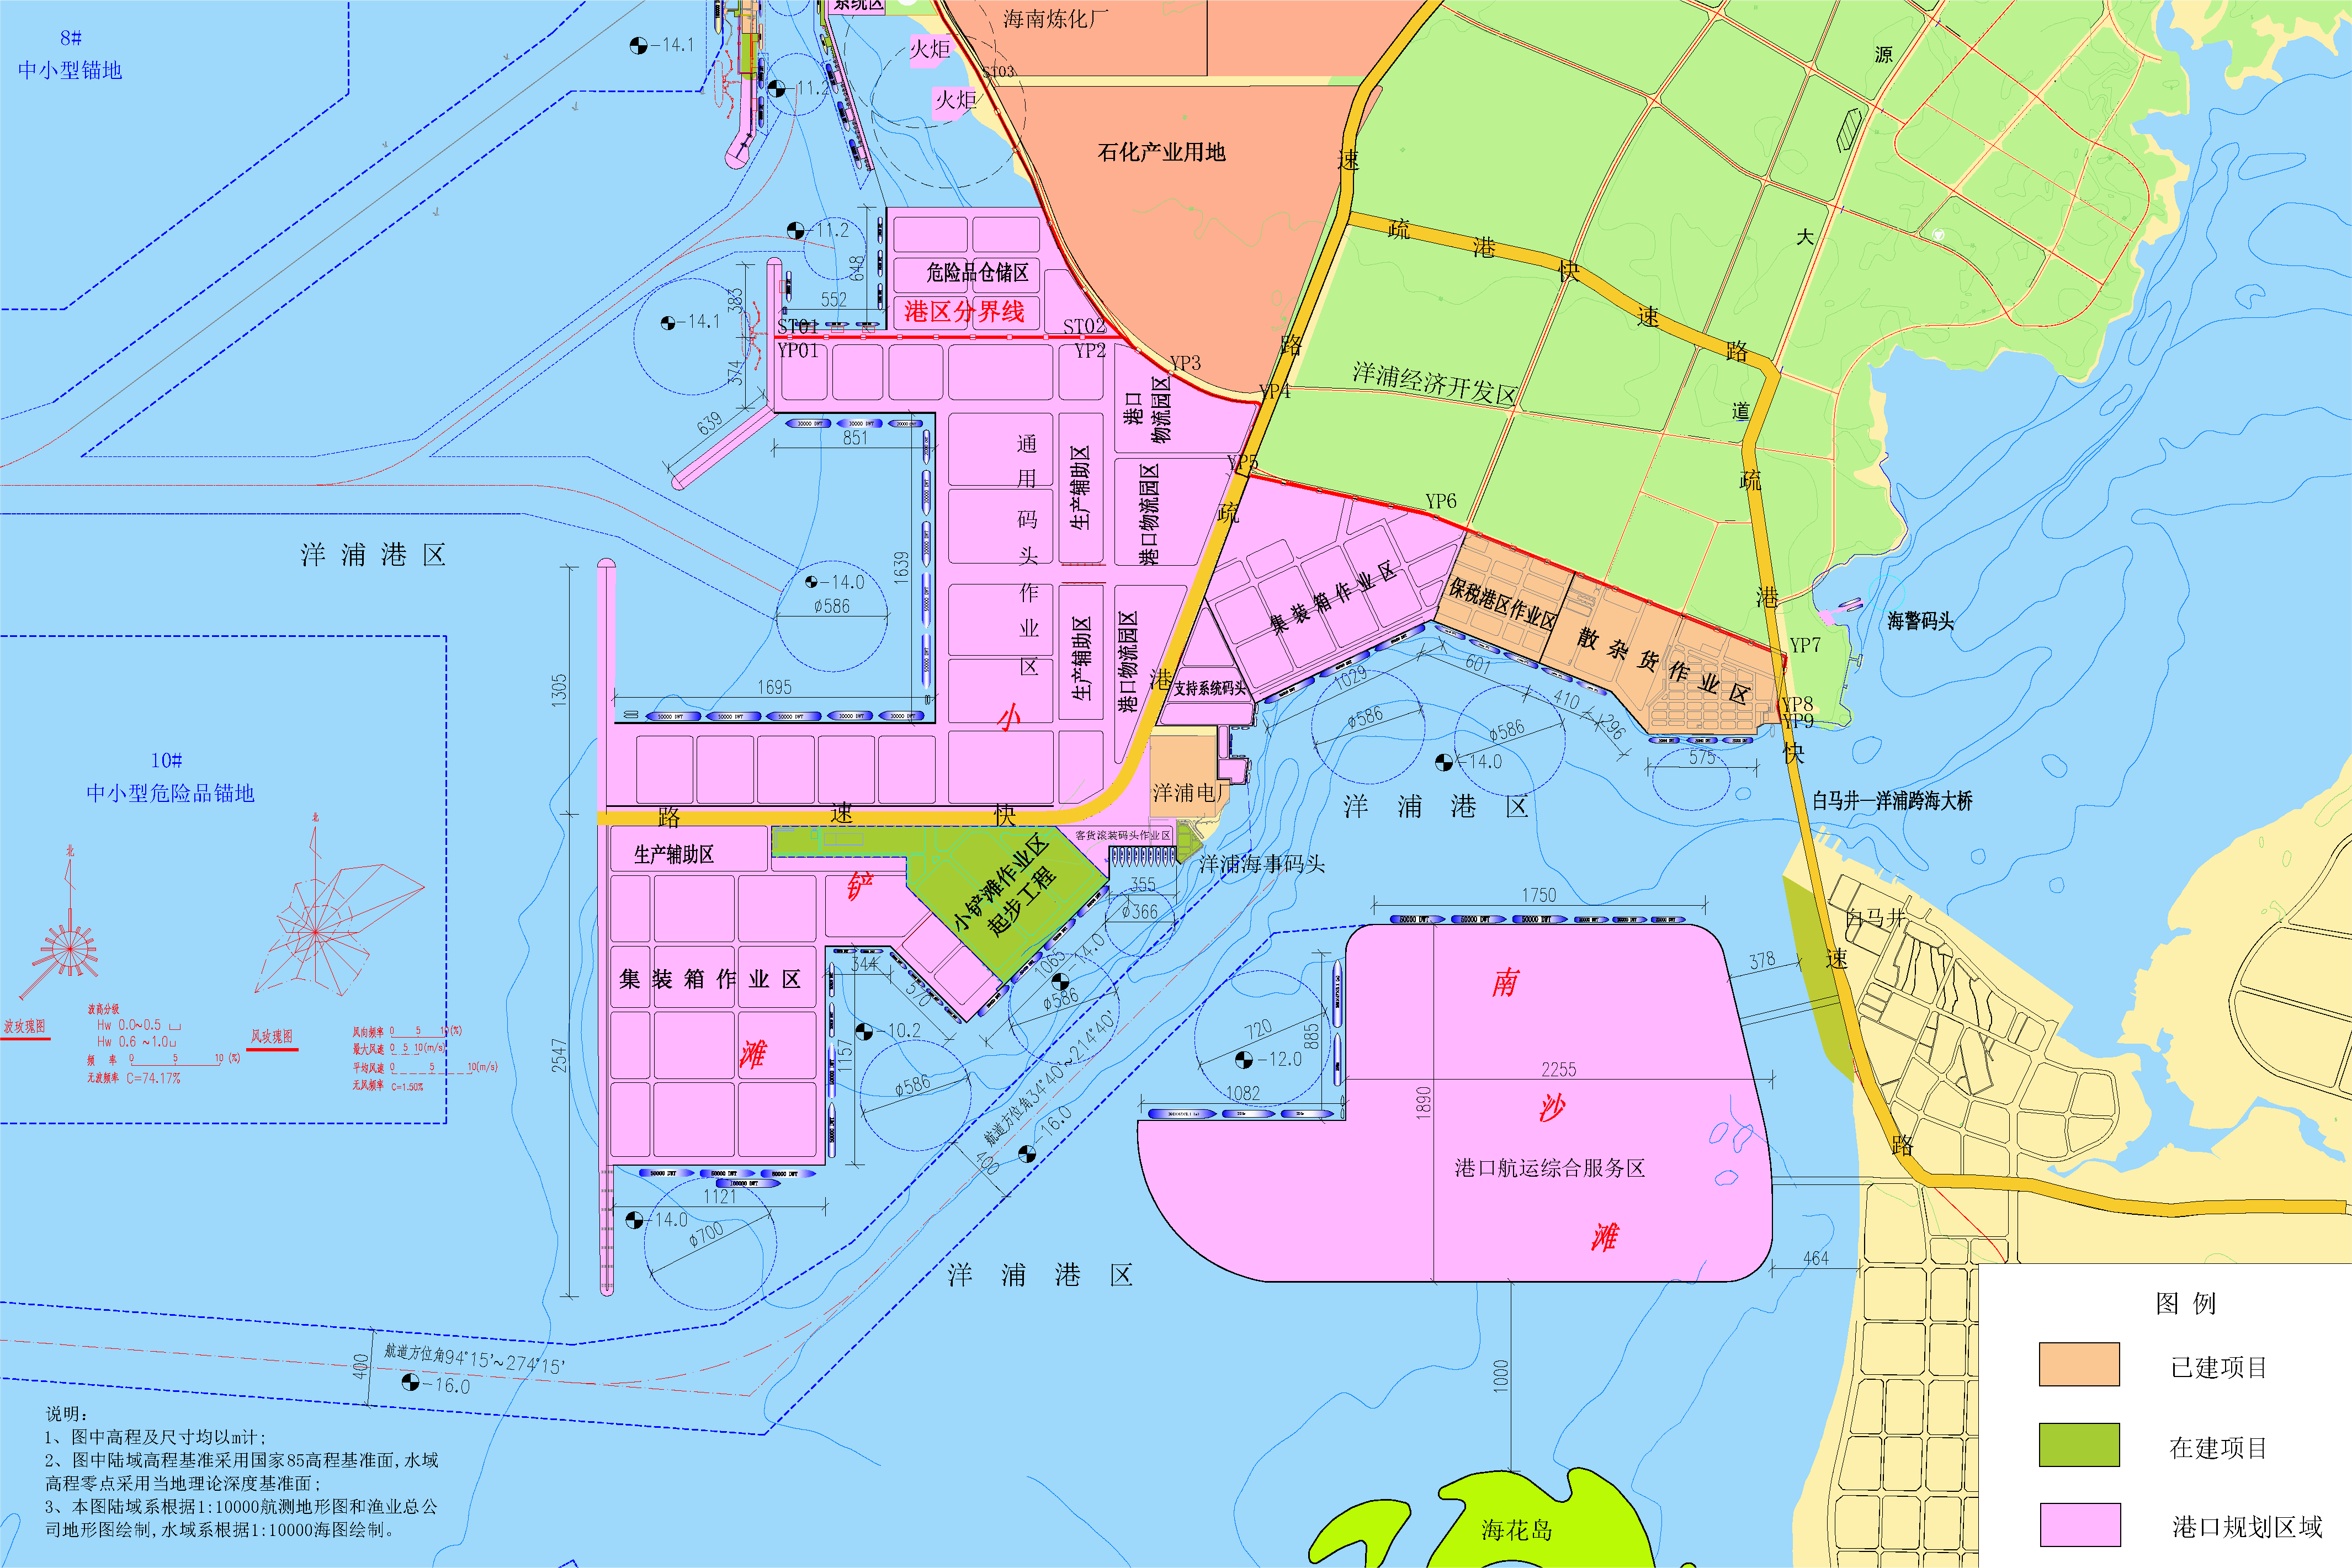 洋浦港小铲滩起步作业区码头港池浅点紧急疏浚项目环境影响报告